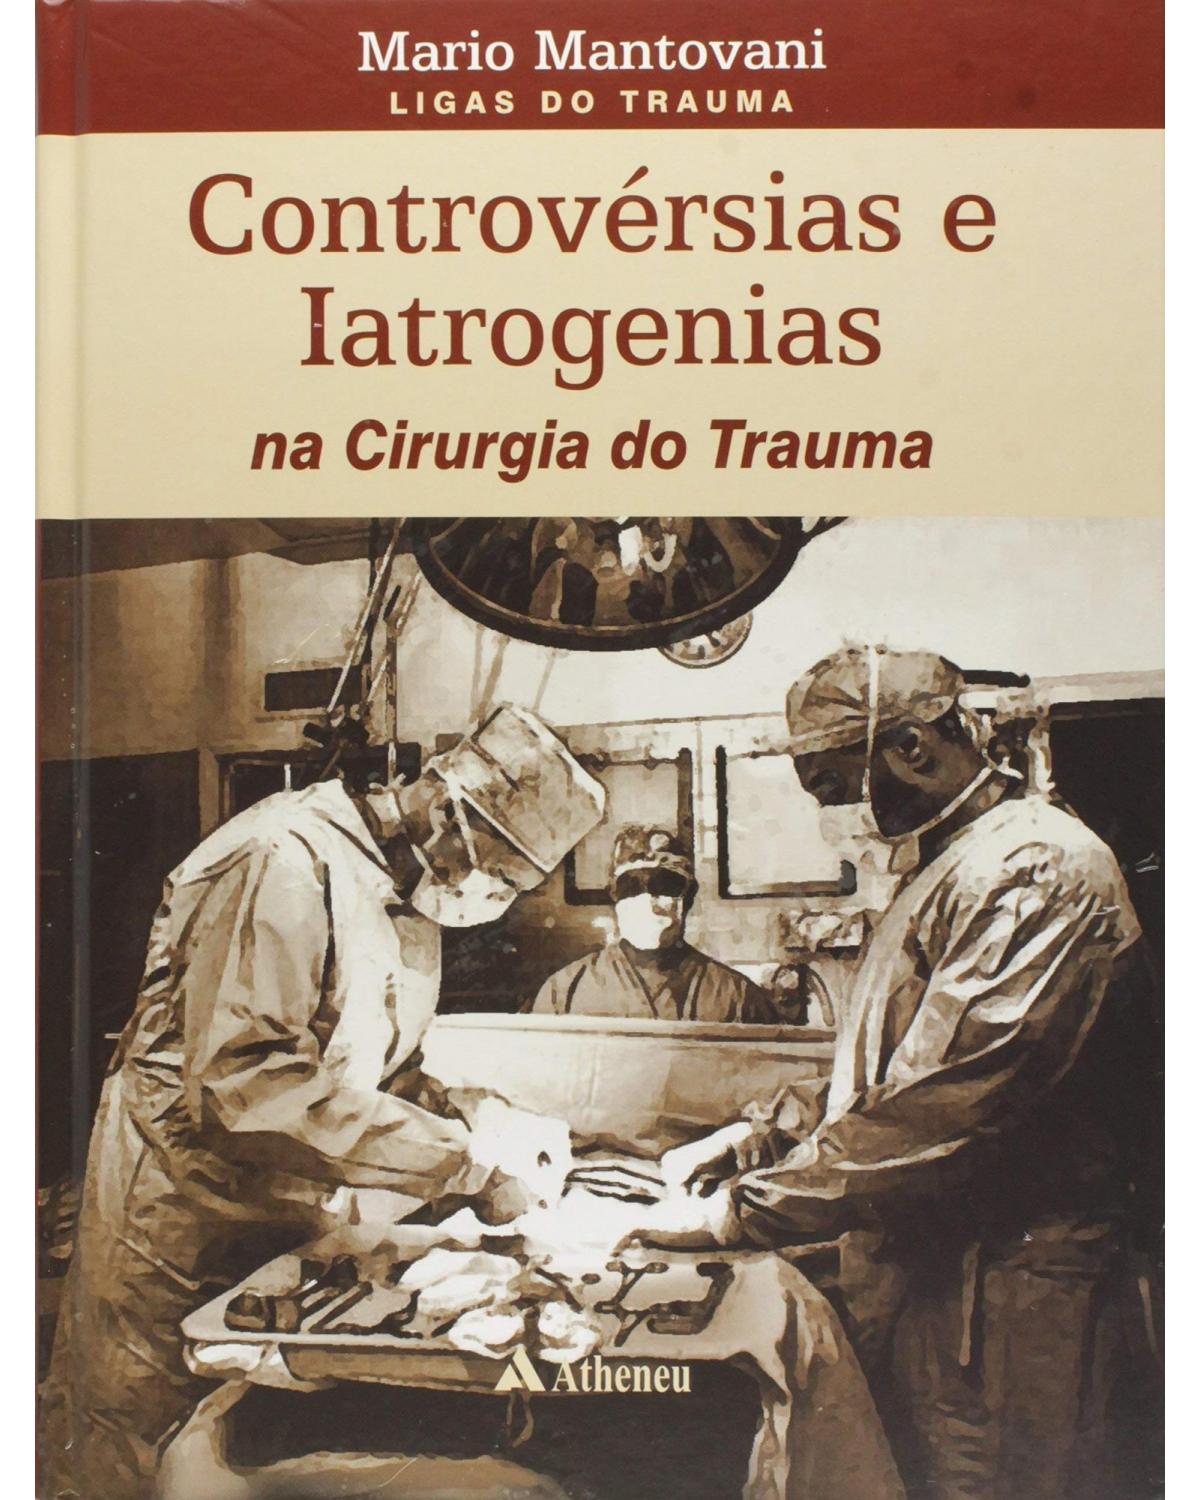 Controvérsias e iatrogenias - 1ª Edição | 2007